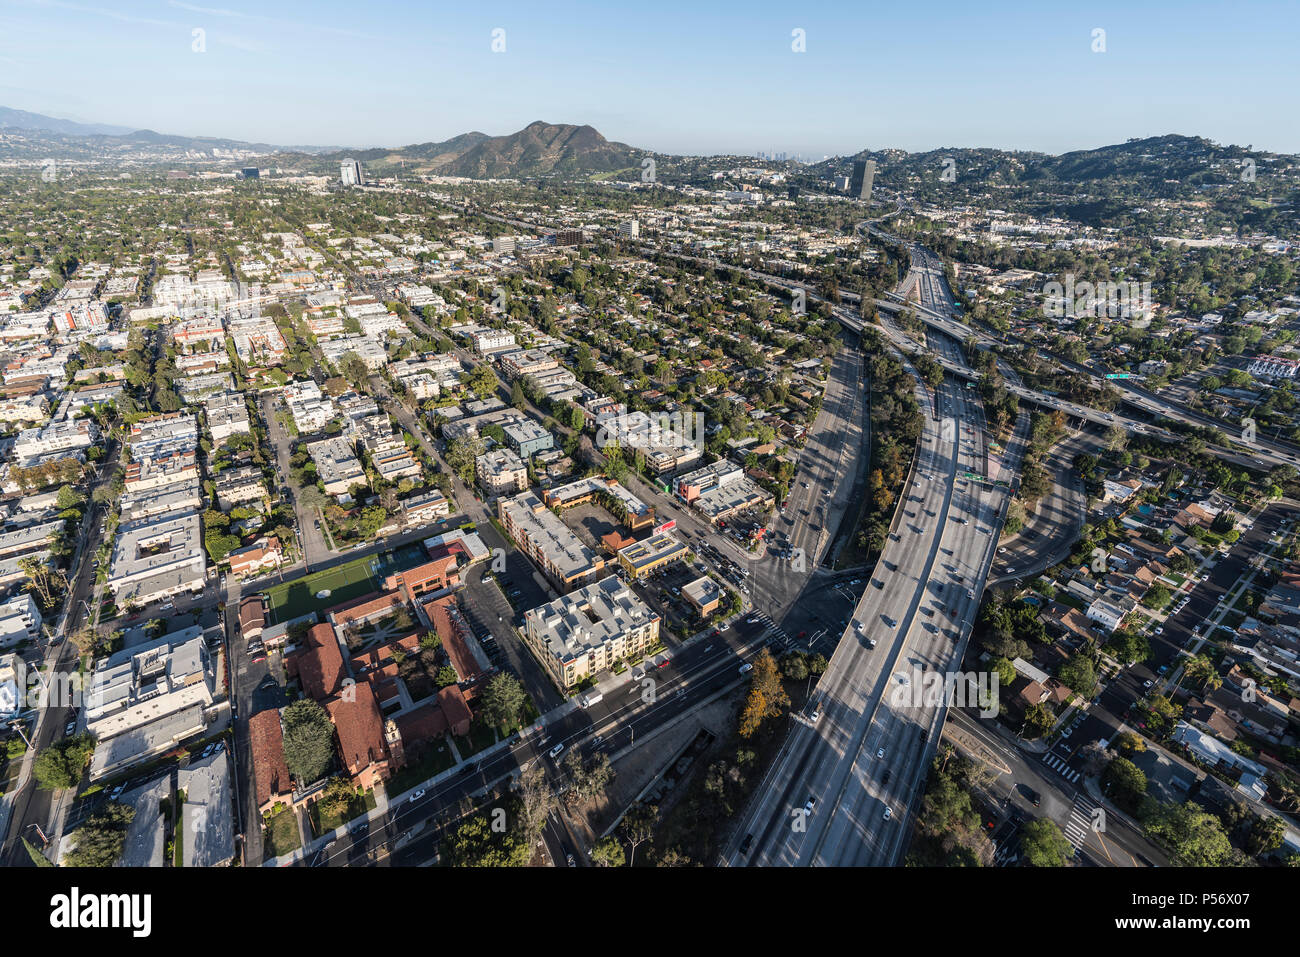 North Hollywood, California, USA - 18 de abril de 2018: Vista aérea hacia el 101, 134 y 170 Freeway interchange en el Valle de San Fernando, de lo Foto de stock